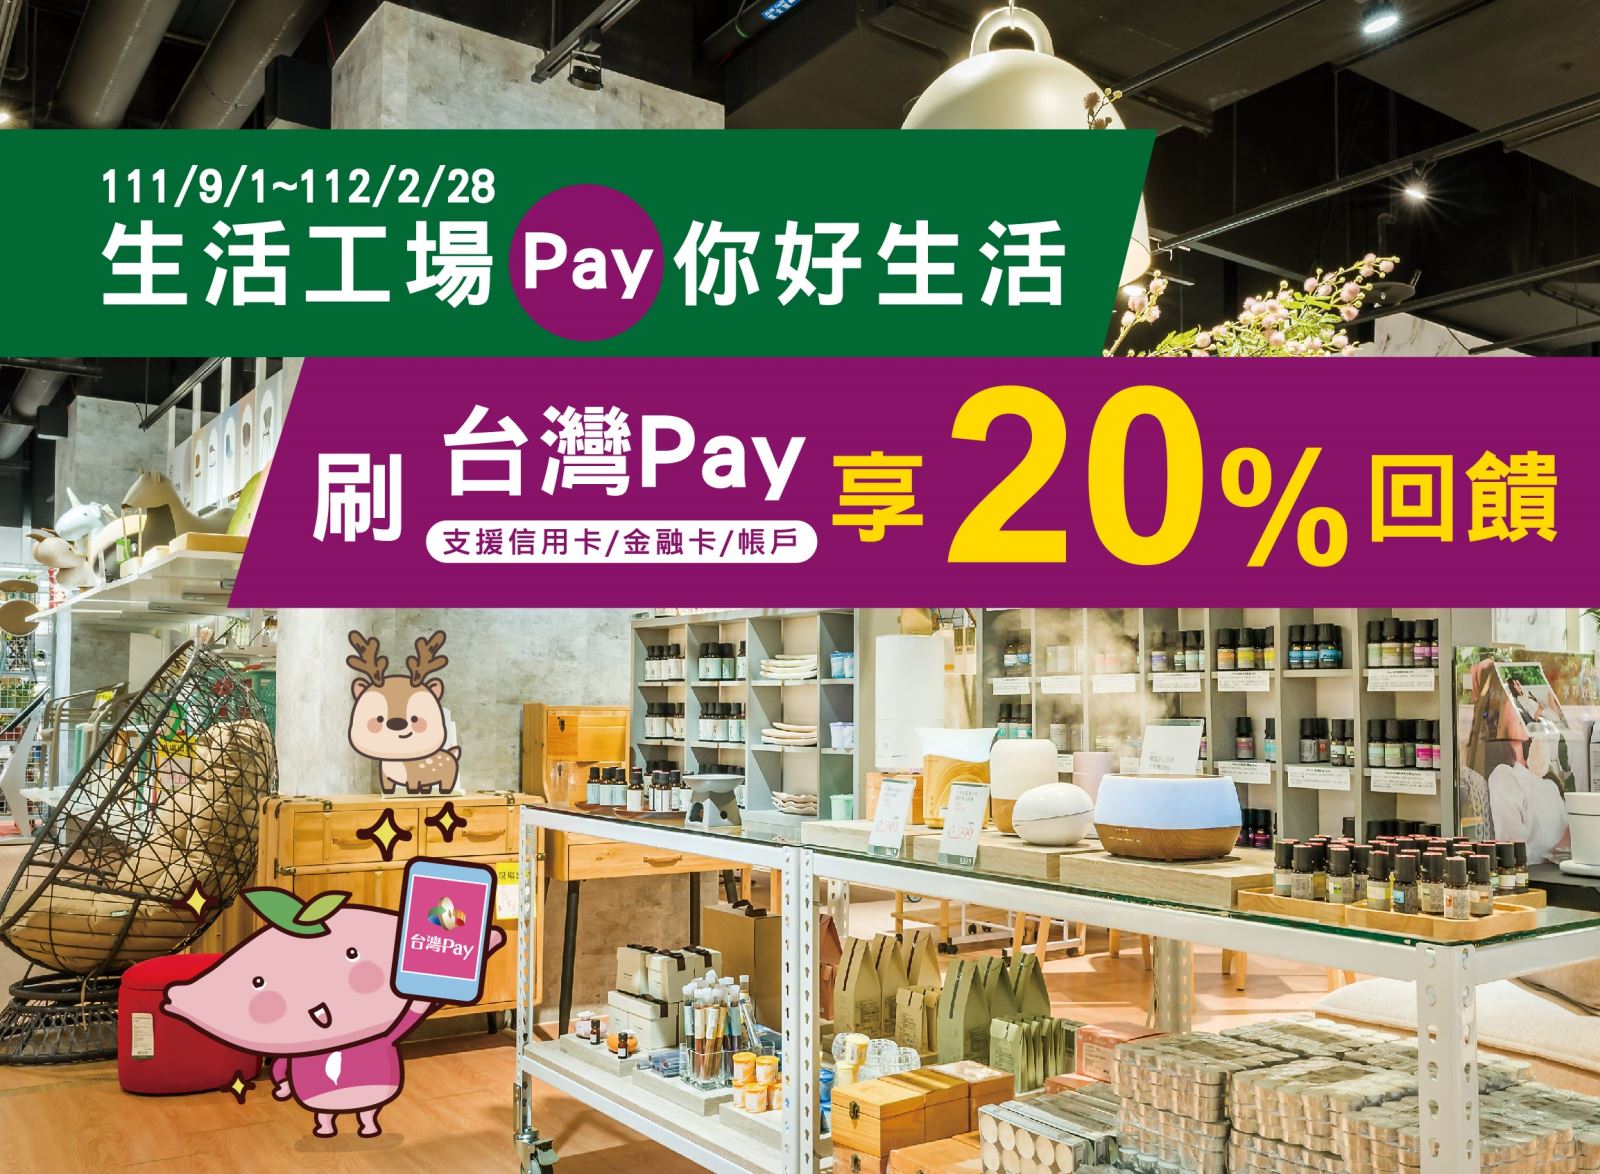 生活工場Pay你好生活 刷台灣Pay享20%回饋。單筆消費金額滿新臺幣1,000 元以上，可享 200 元現金回饋(此圖片為本優惠活動主要視覺，活動內容請參考活動辦法說明文字)